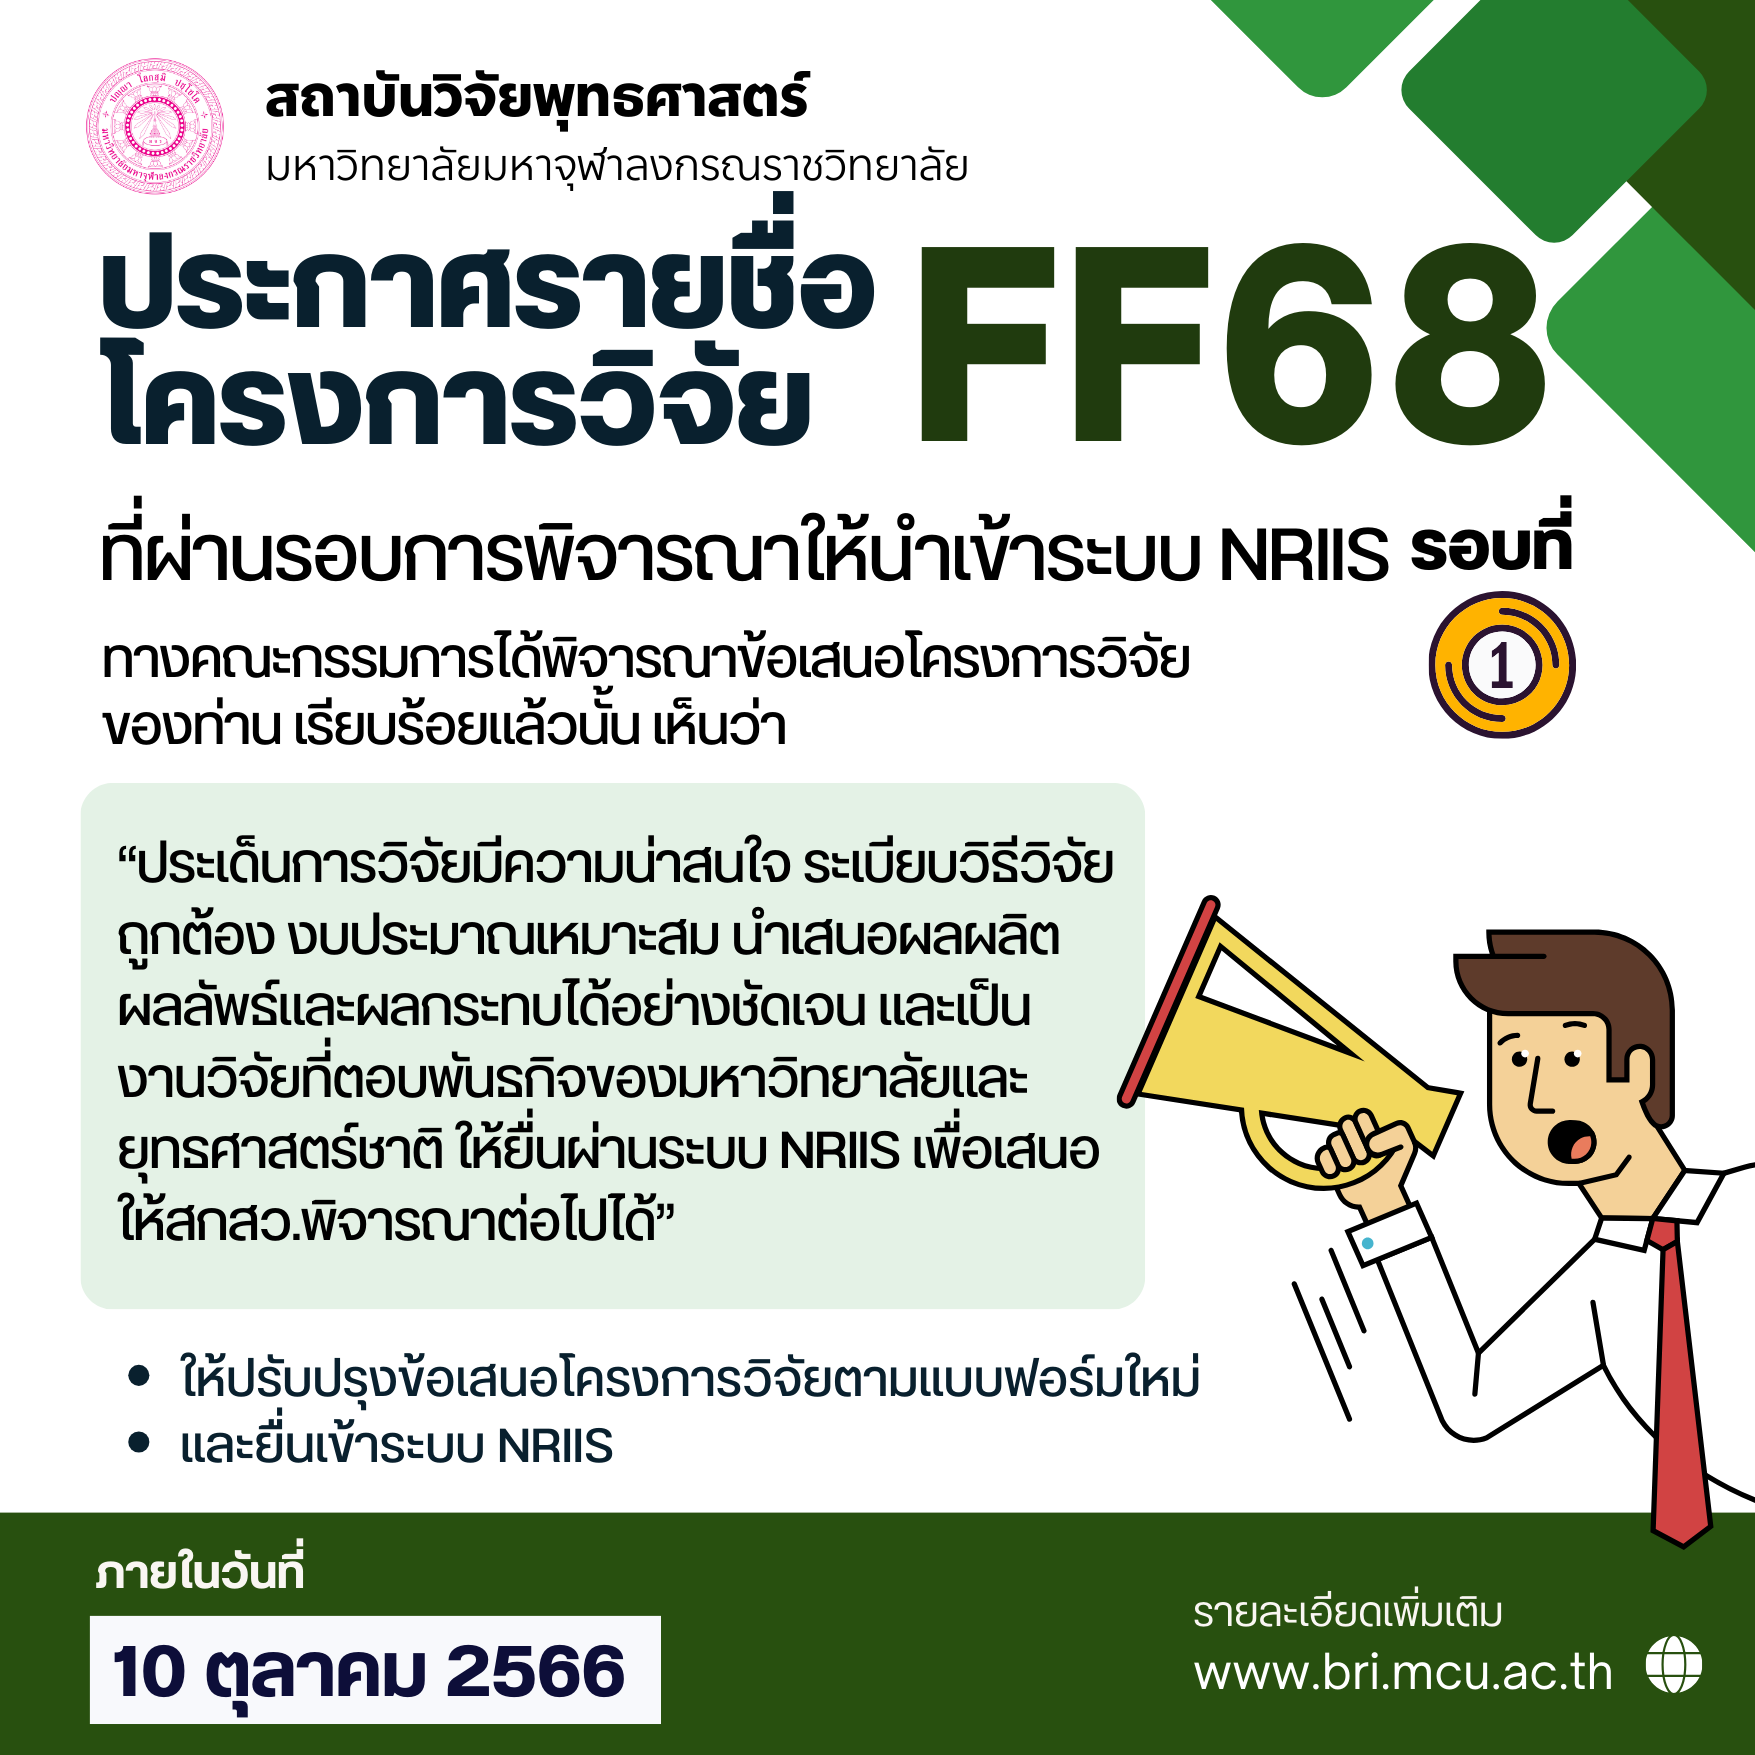 ประกาศผลการพิจารณาข้อเสนอโครงการวิจัย Fundamental Fund (FF) รอบที่ 1 ประจำปี พ.ศ. 2568